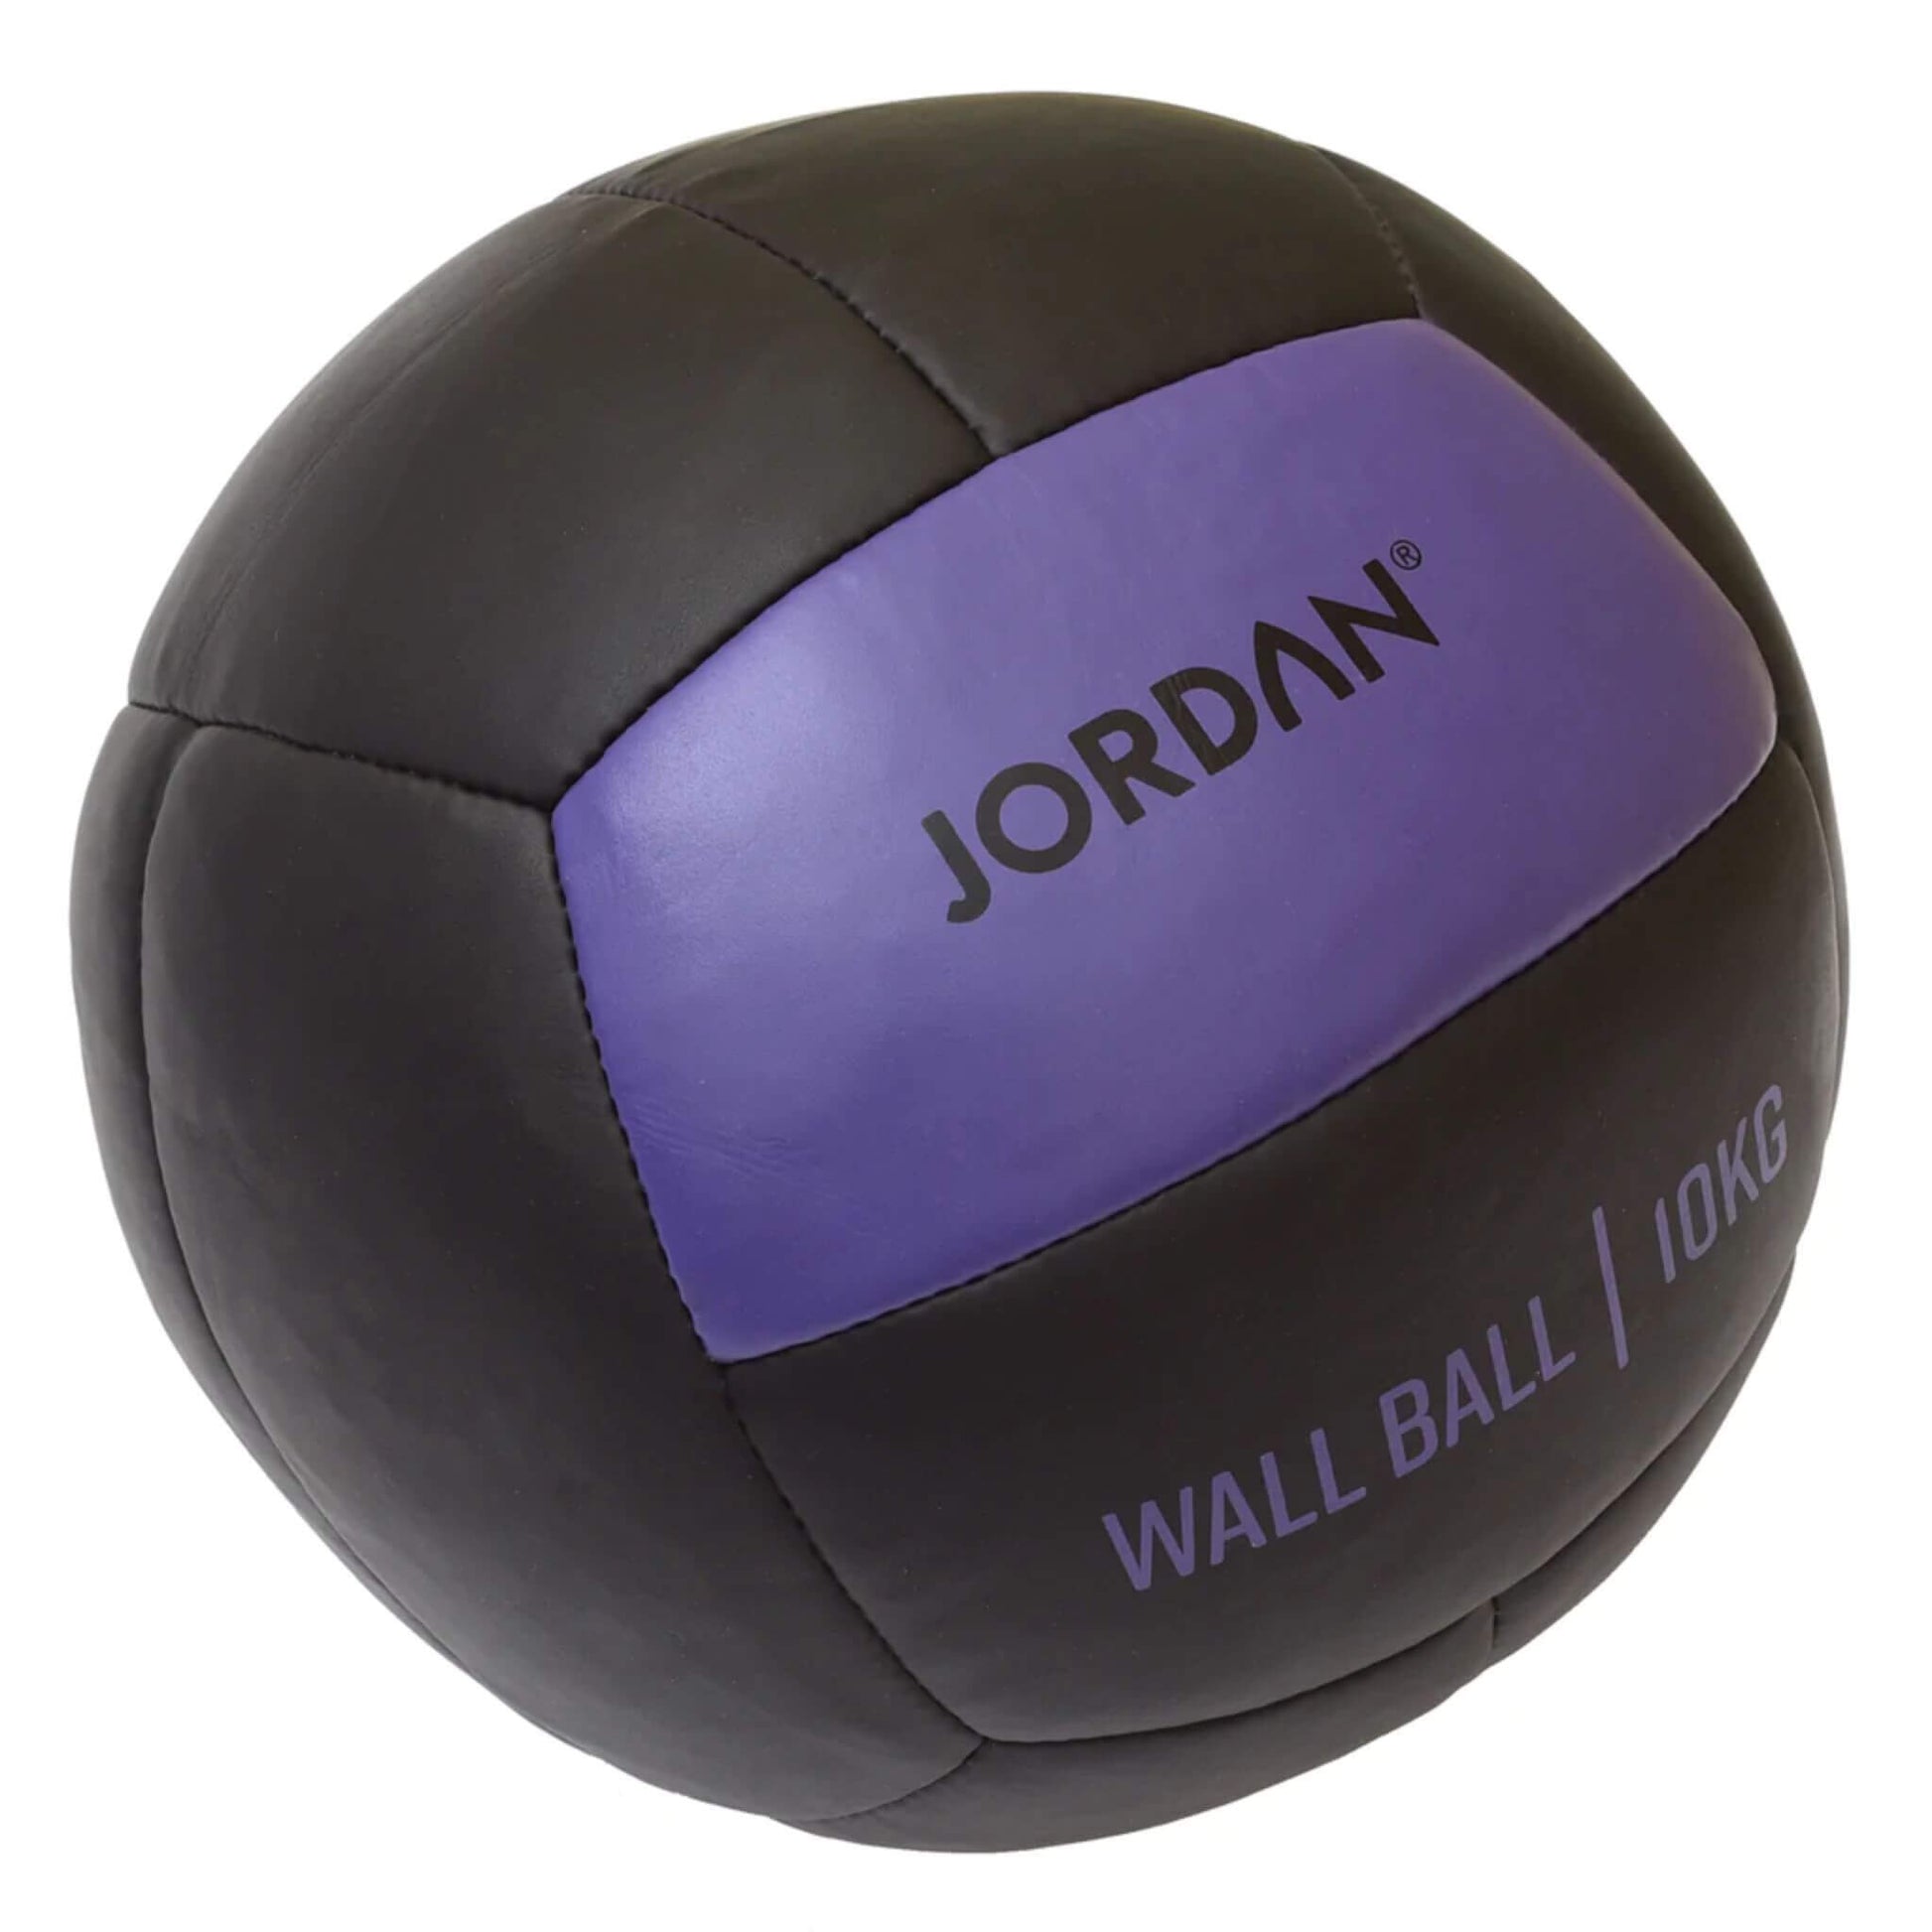 Wall Ball (Oversized Medicine Ball) 10kg